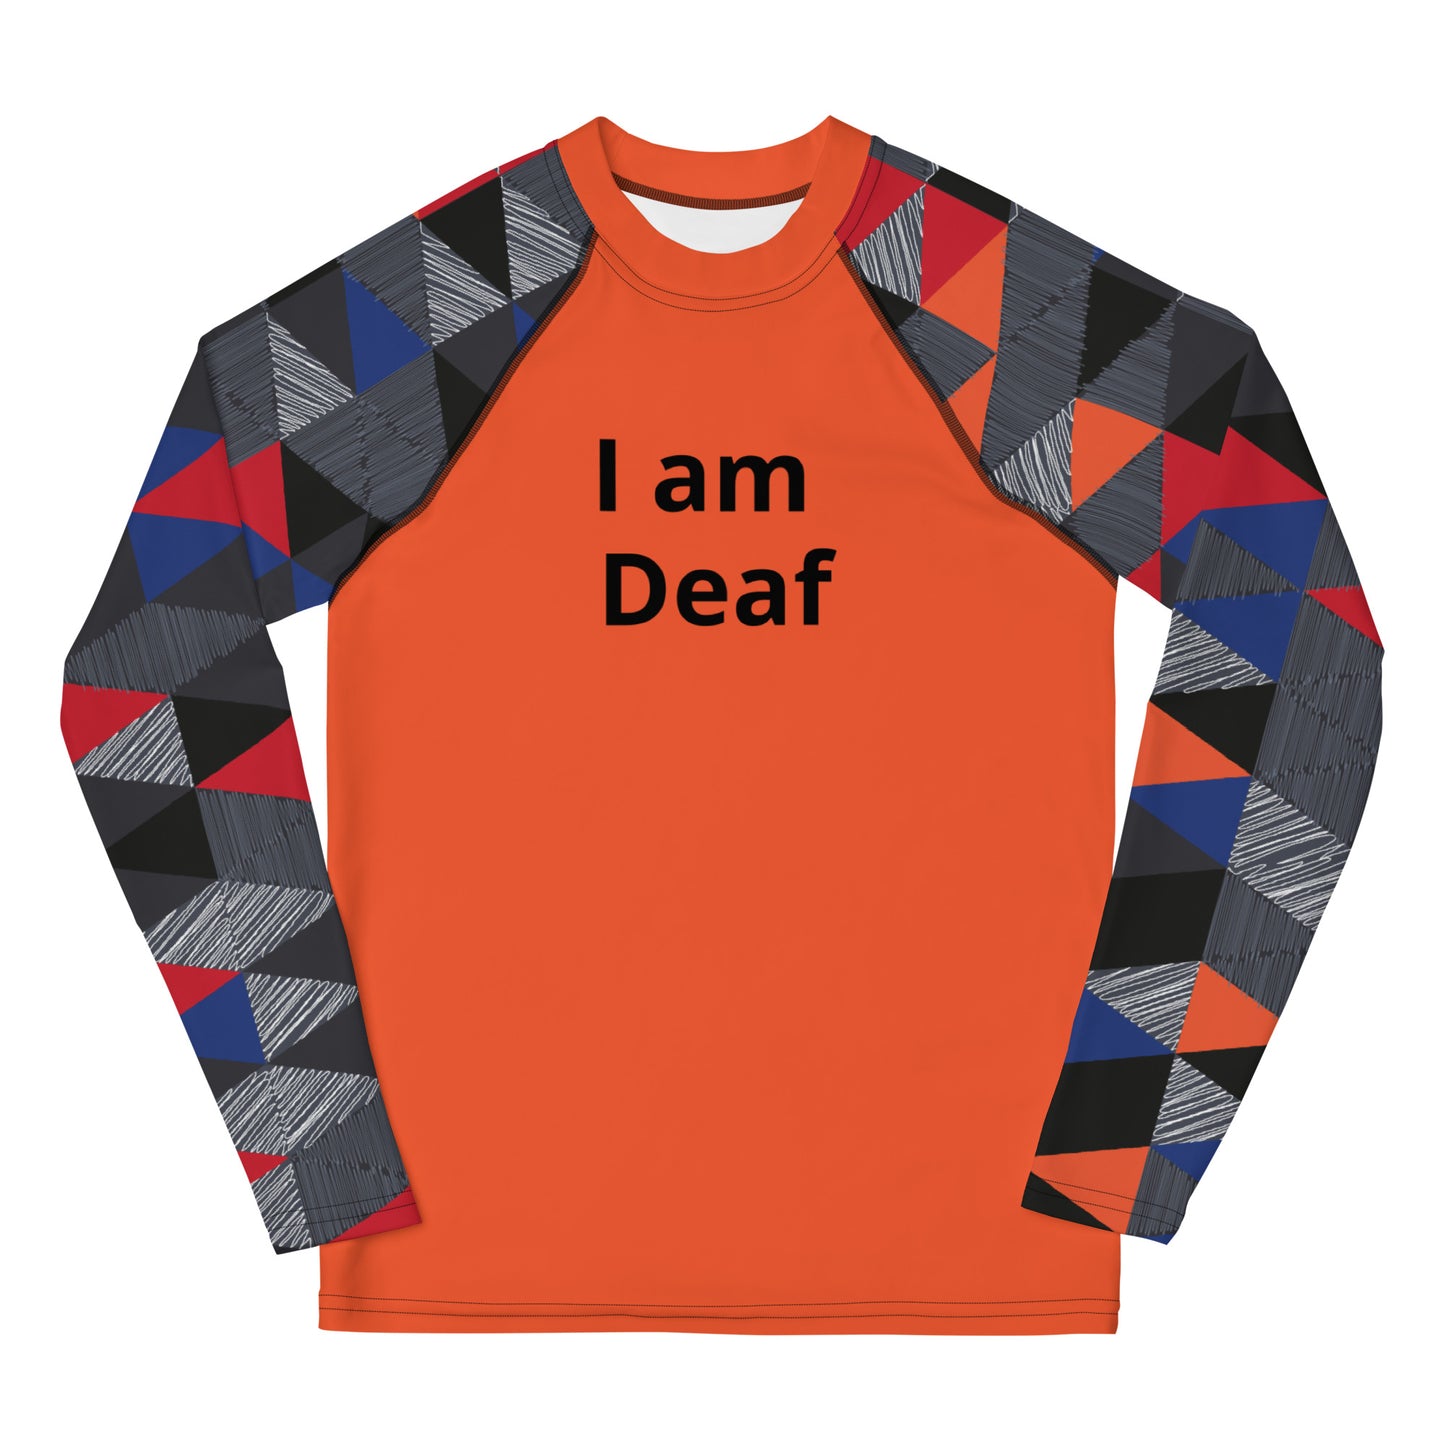 I am Deaf - Orange Youth Rash Guard